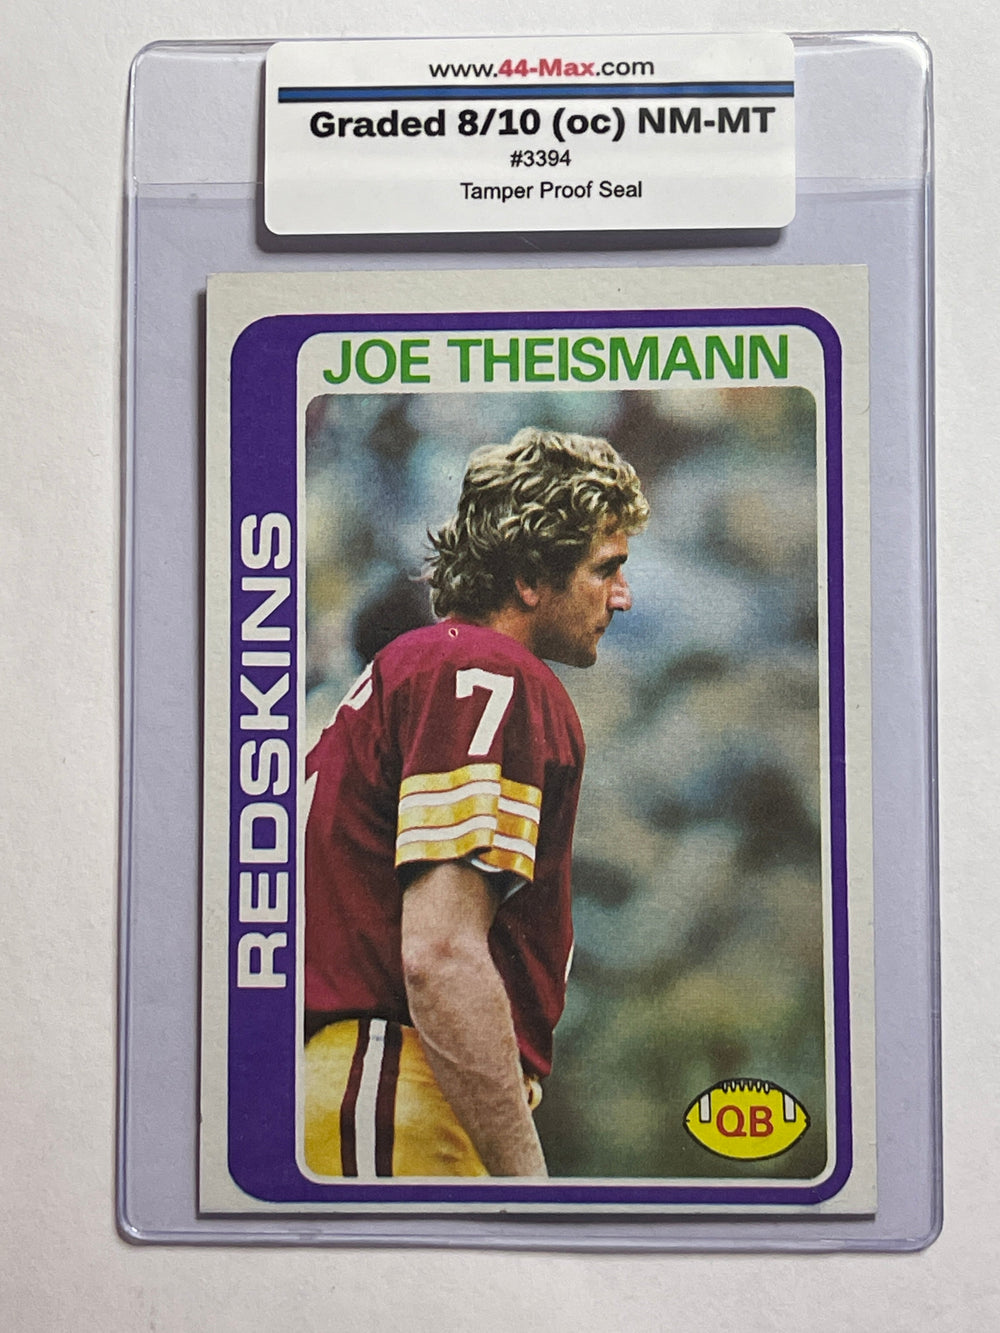 Joe Theismann 1978 Topps Football Card. 44-Max 8/10 (oc) NM-MT #3394